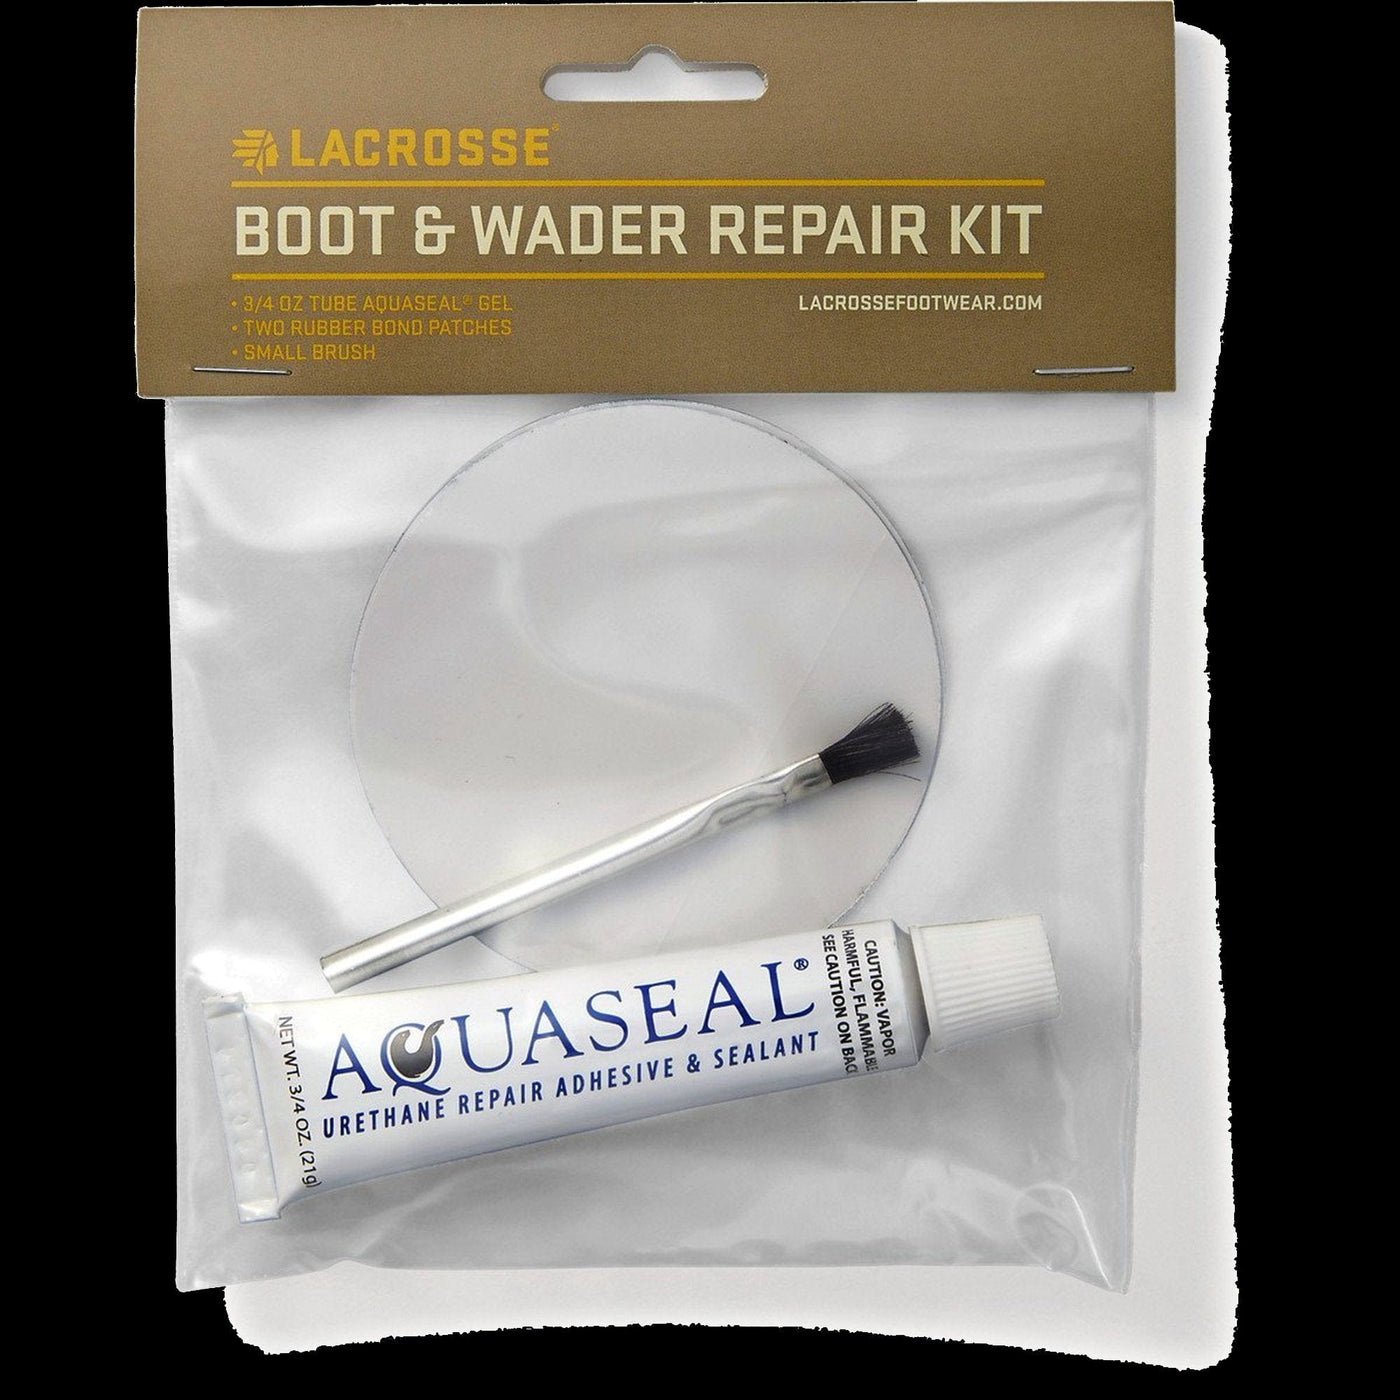 Lacrosse Boot & Wader Repair Kit